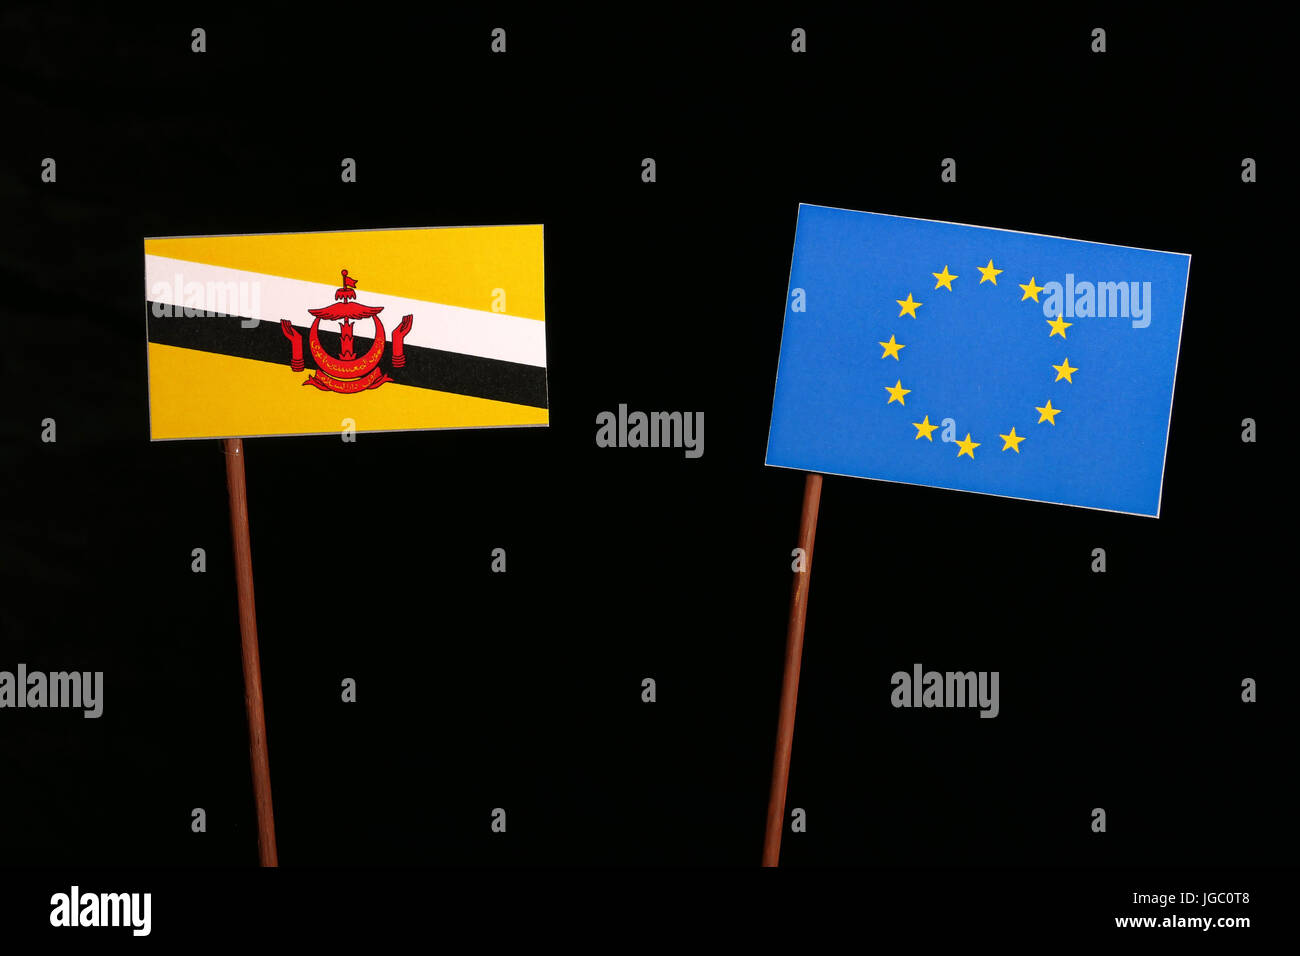 Lá cờ Liên minh châu Âu của Brunei được thiết kế táo bạo và độc đáo với sự kết hợp tuyệt vời giữa màu xanh, màu vàng và những đường nét tinh tế. Xem hình ảnh để chiêm ngưỡng sự tinh tế của lá cờ này.